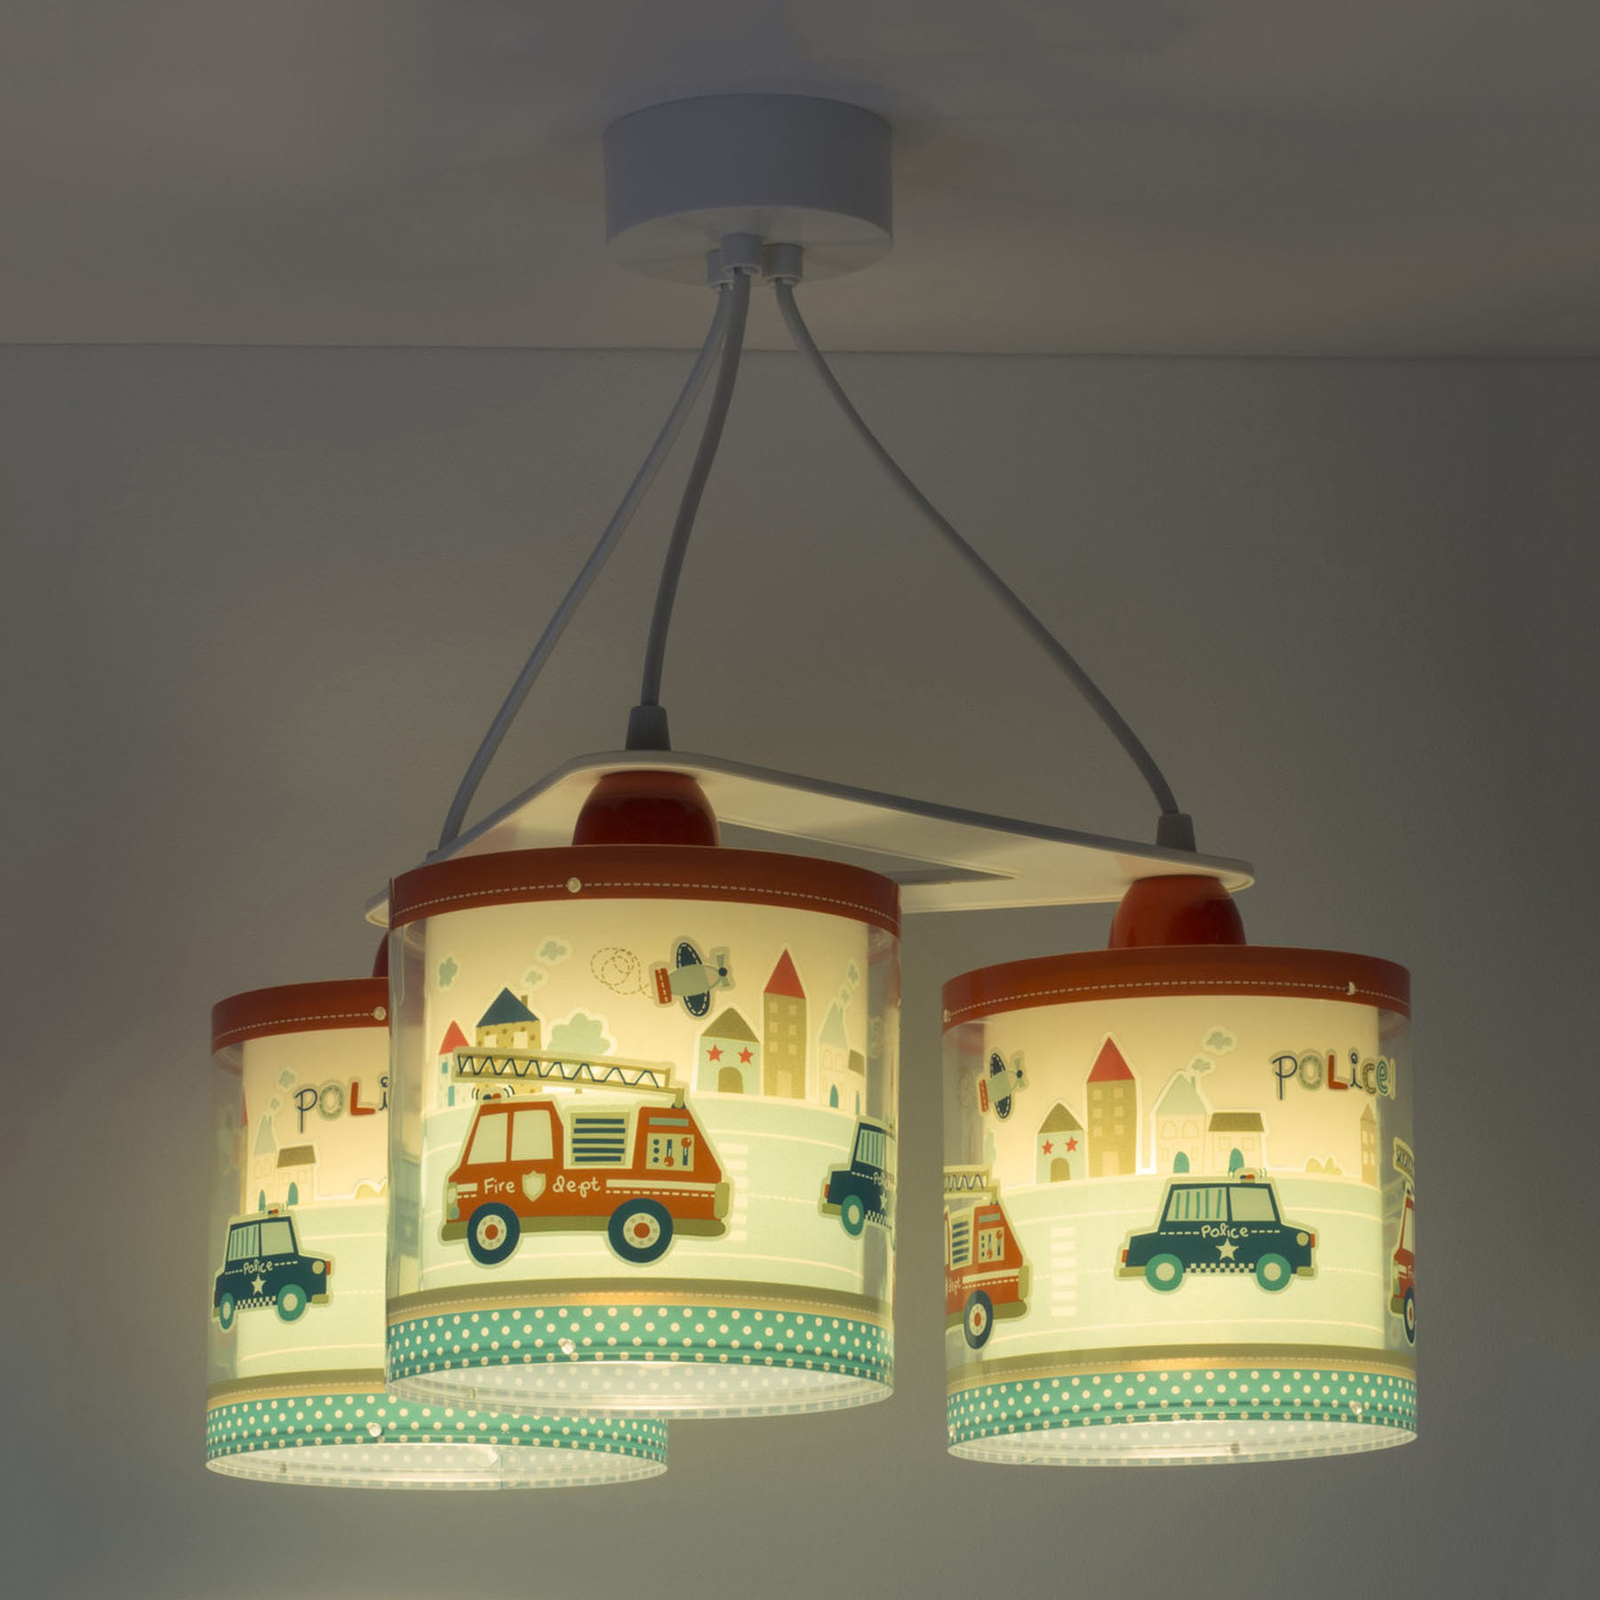 Hanglamp police voor kinderen, versie met 3-lamps